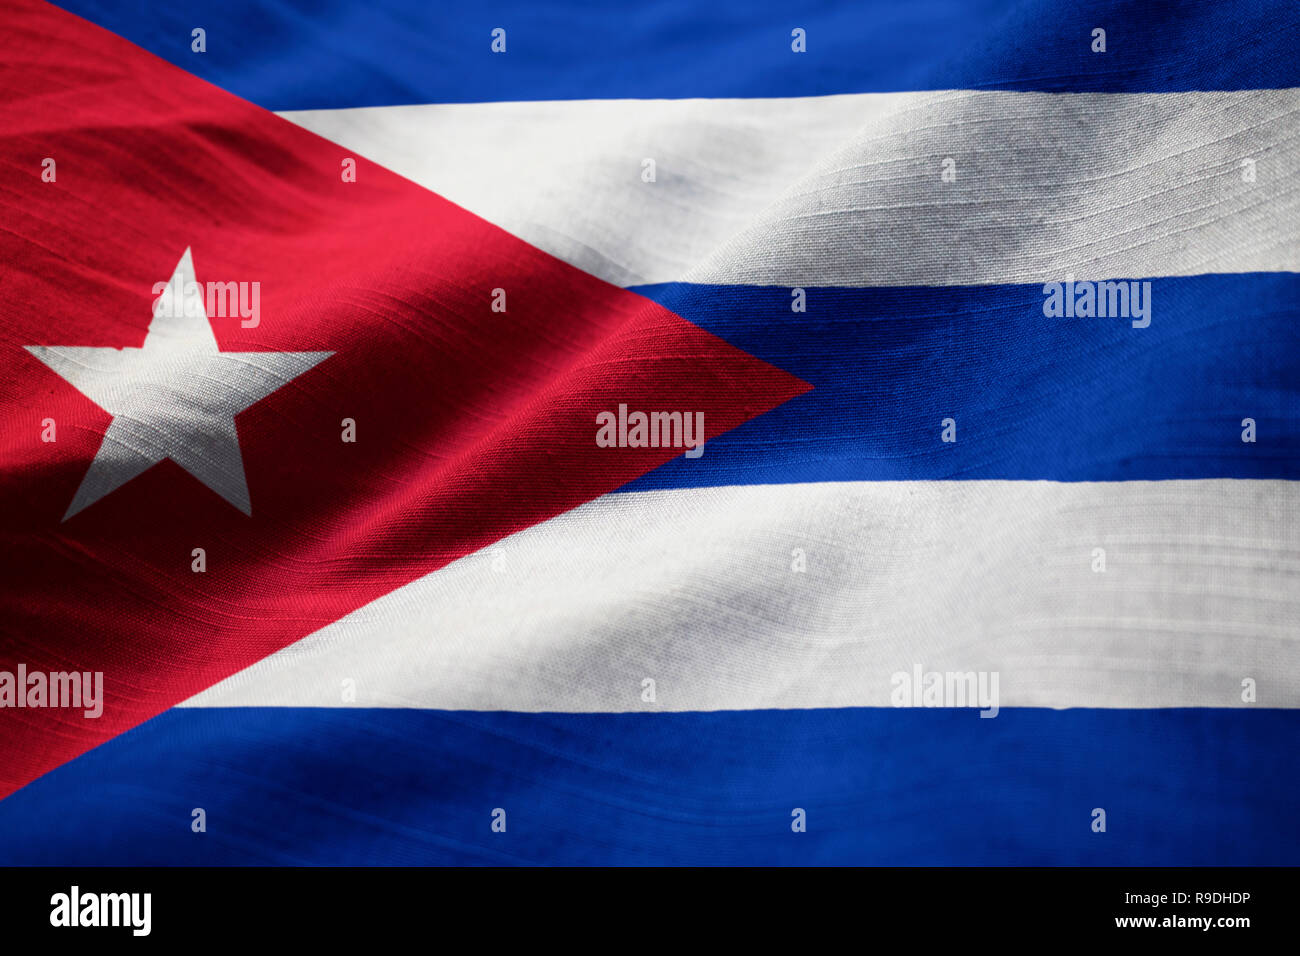 Closeup of Ruffled Cuba Flag, Cuba Flag Blowing in Wind Stock Photo